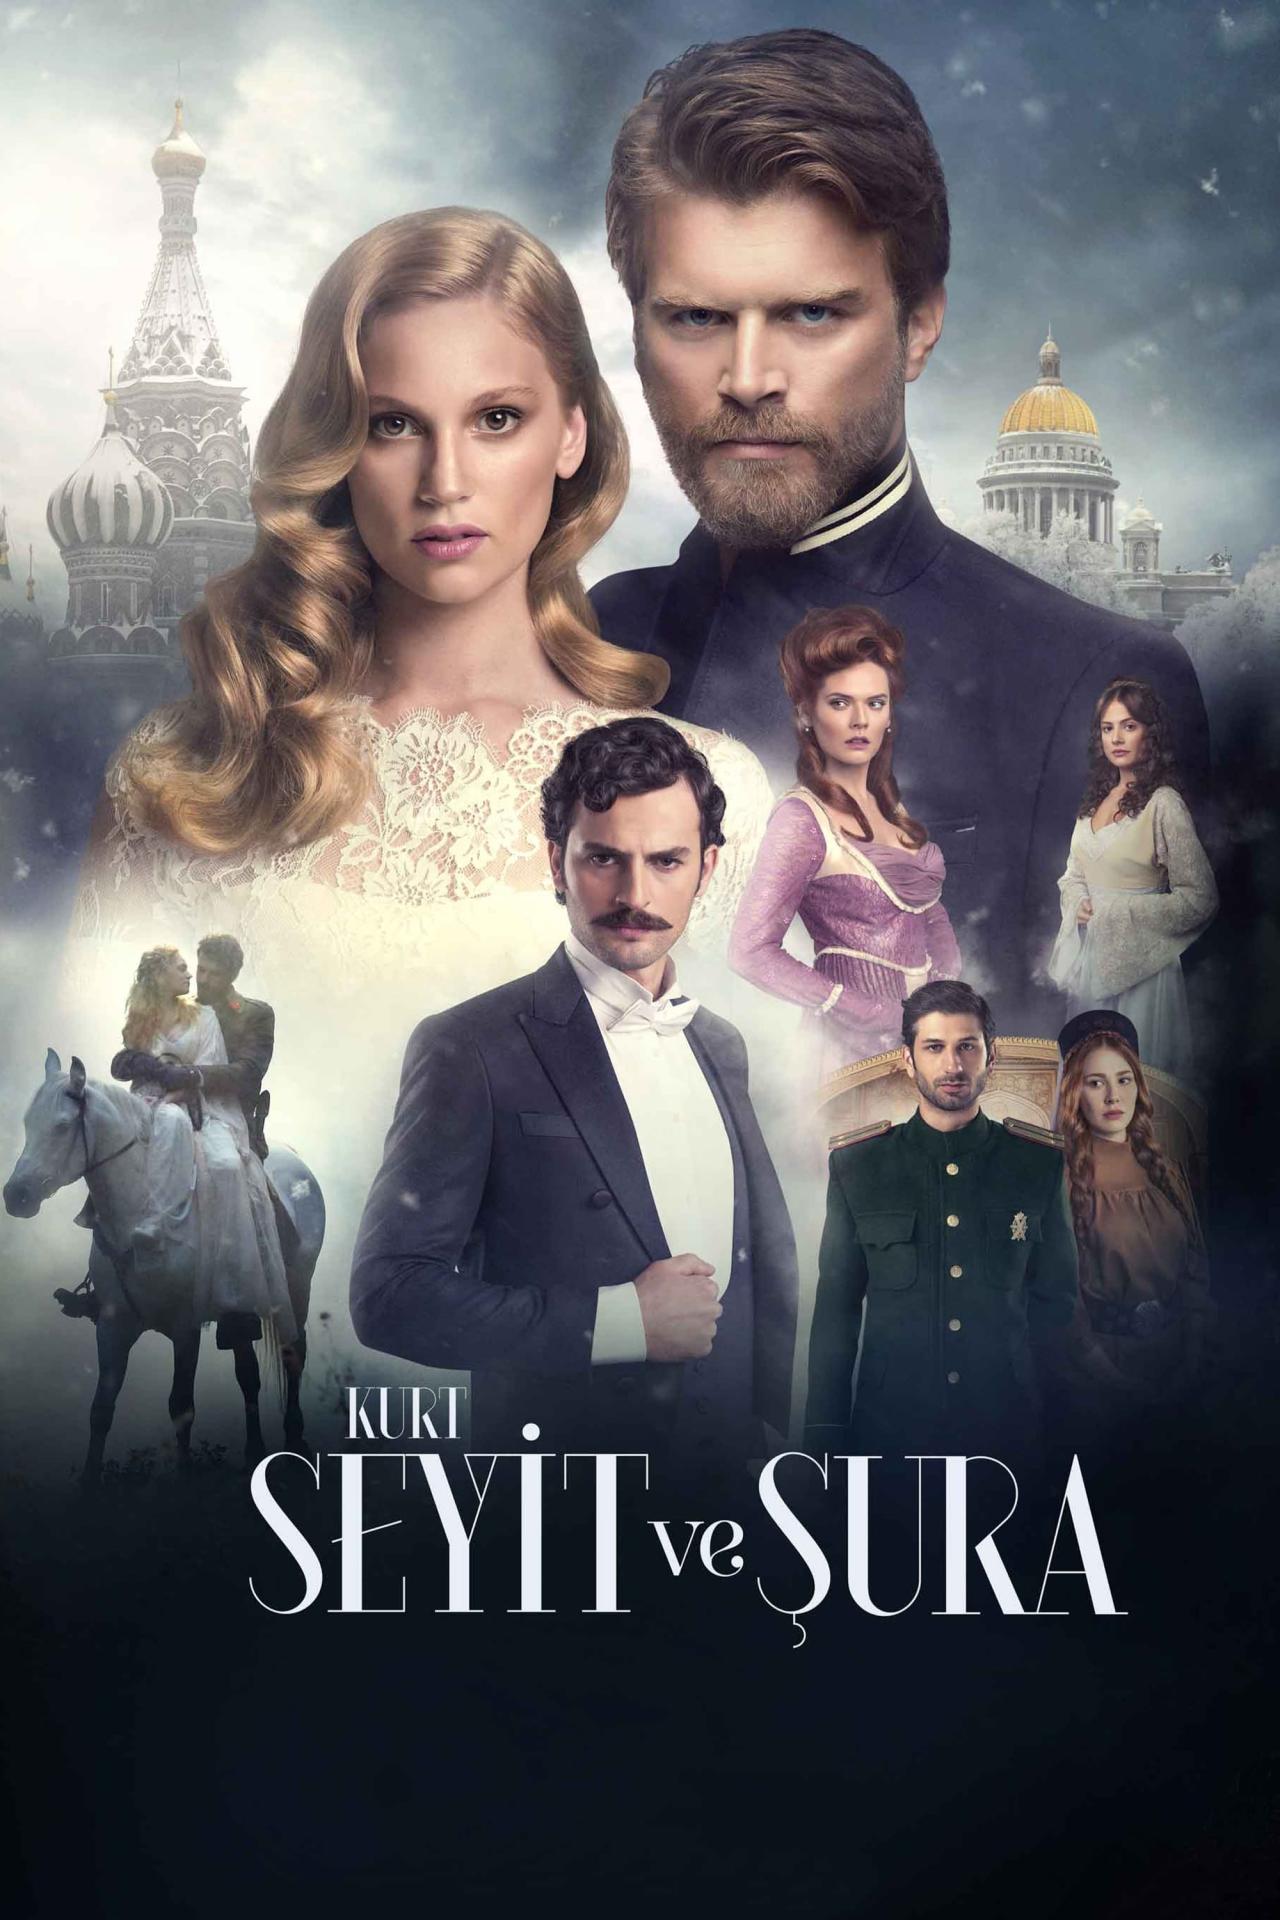 Les saisons de Kurt Seyit ve Şura sont-elles disponibles sur Netflix ou autre ?